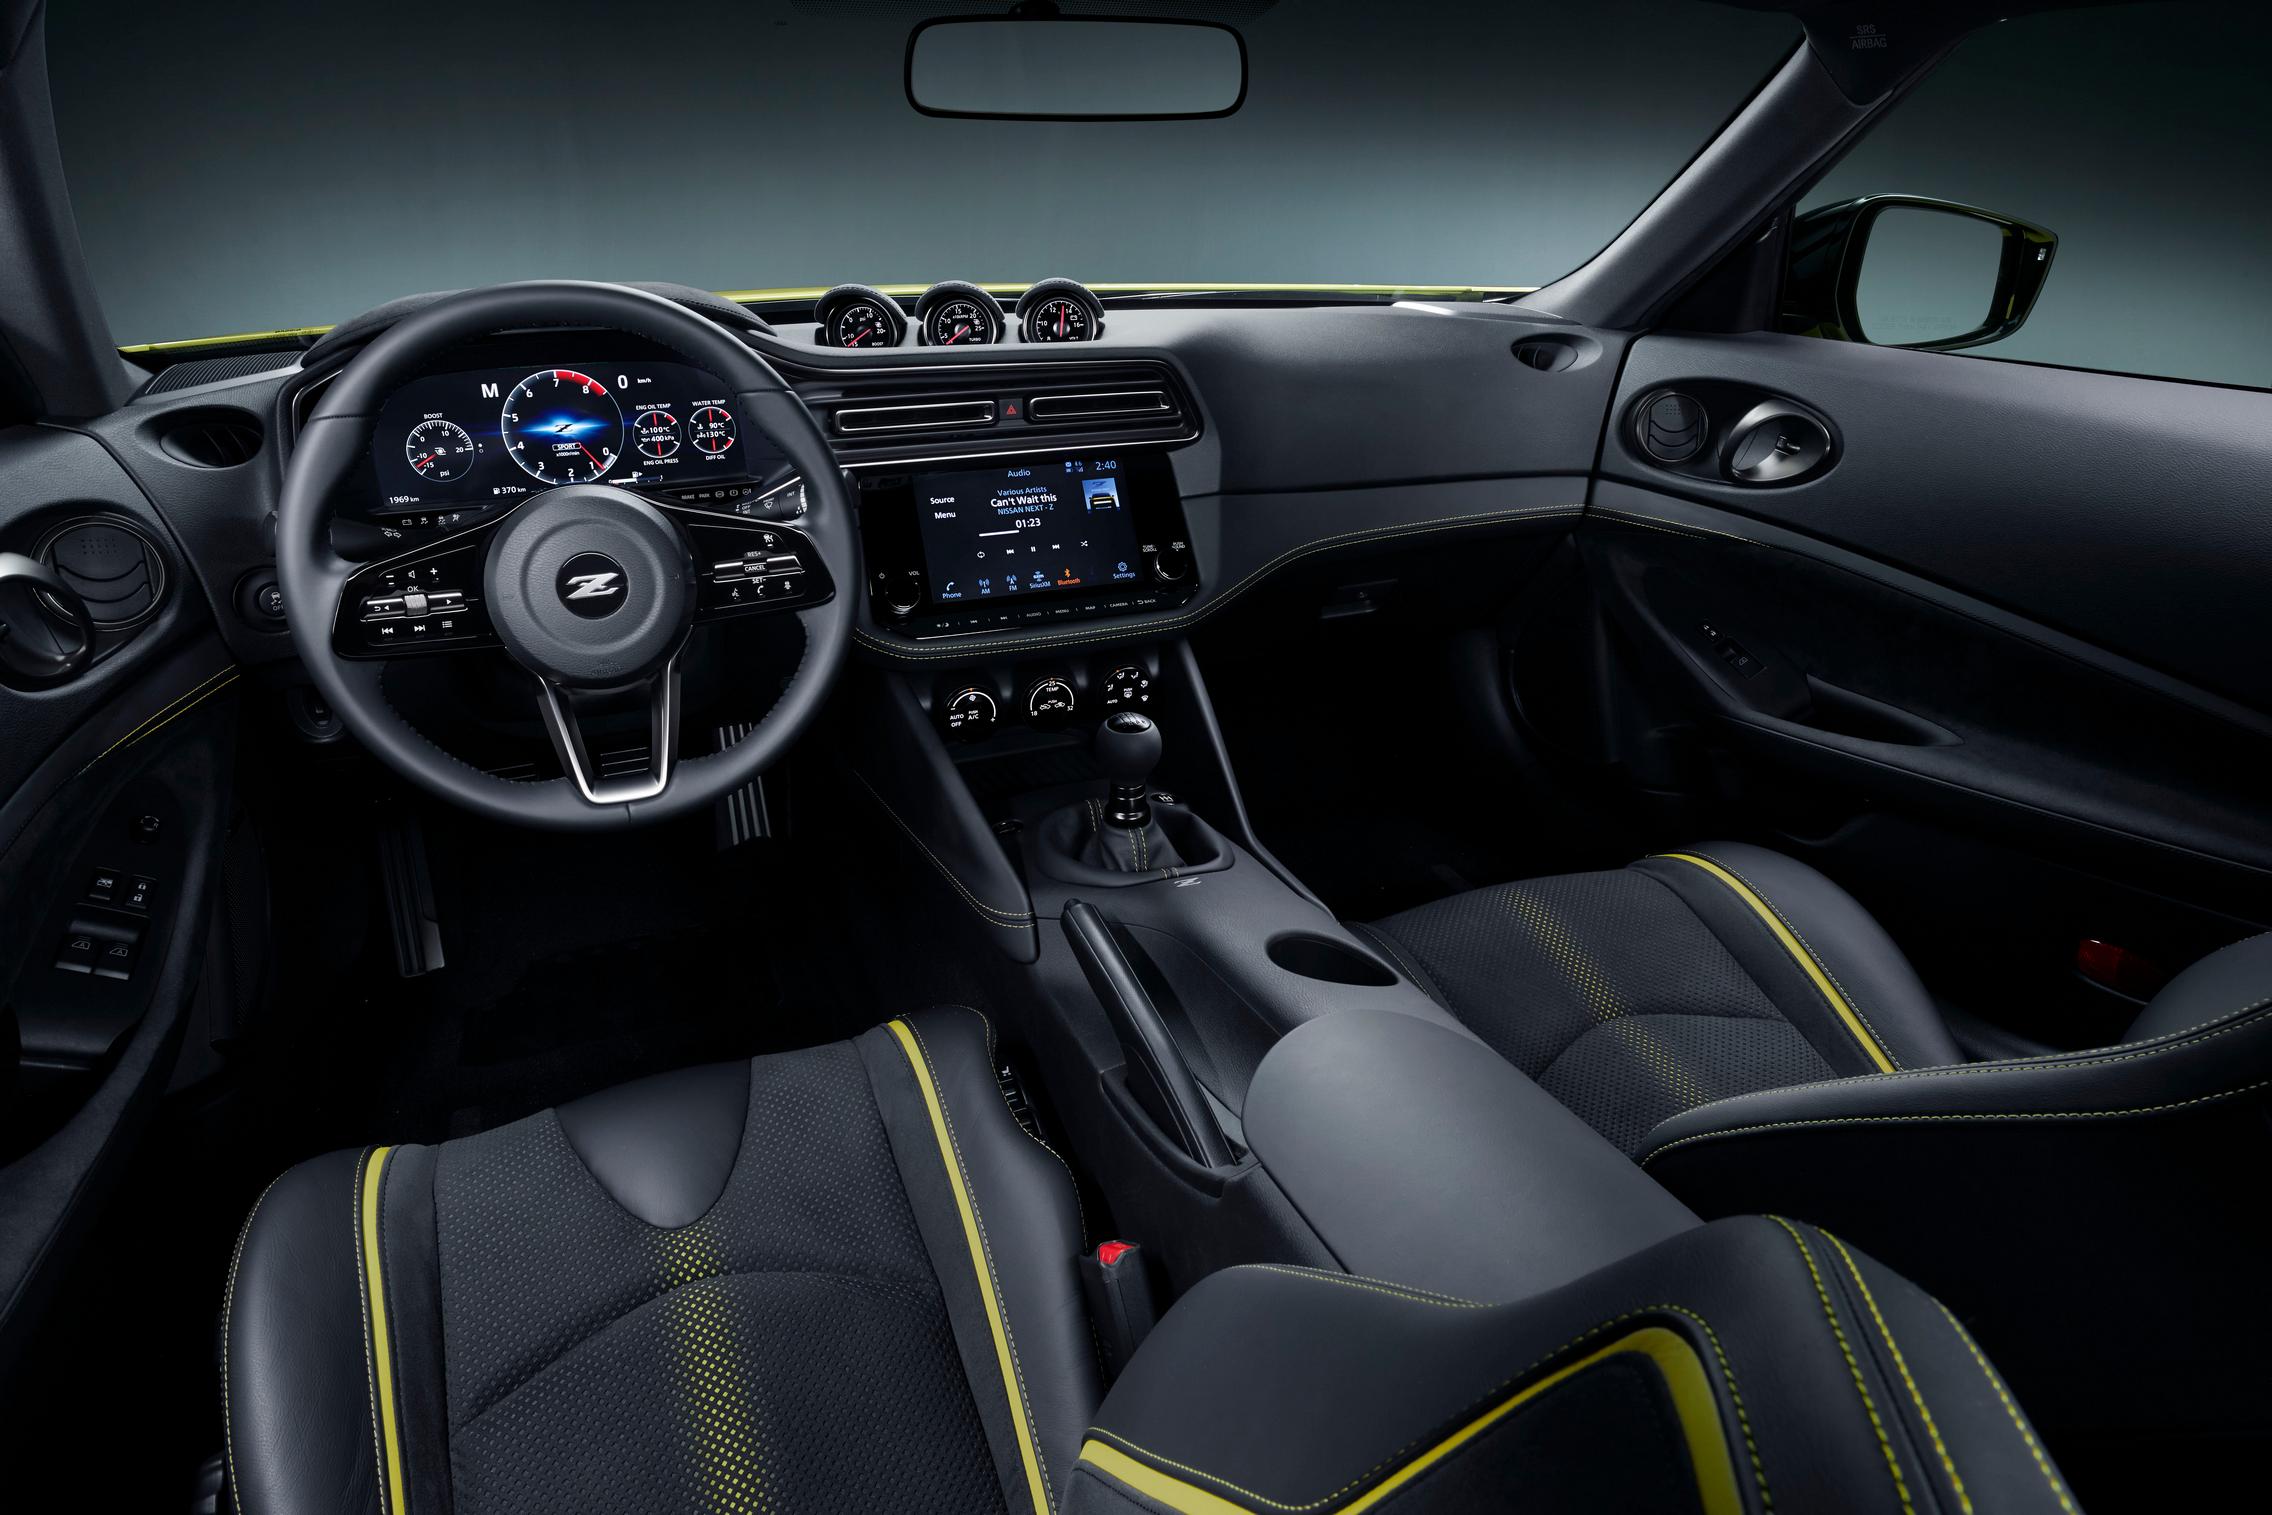 Салон Nissan Z Proto получает 12,3-дюймовый цифровой дисплей, три аналоговых шкалы, установленные на приборной панели, и глубокое рулевое колесо.